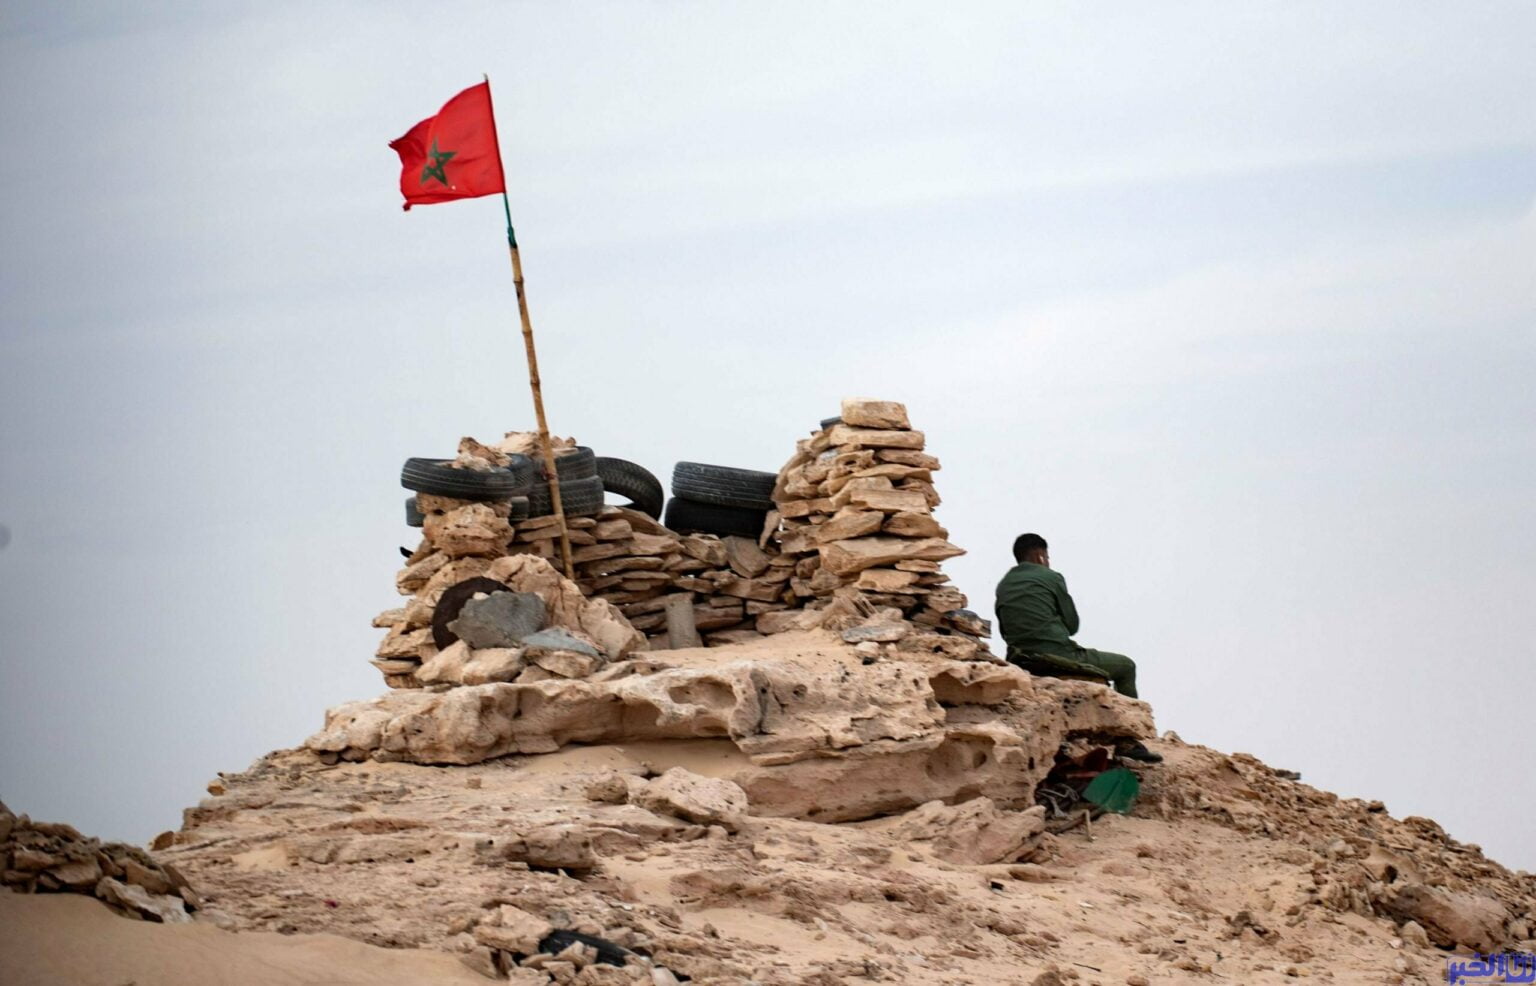 إحالة 16 عسكريا على محاكمة فورية بسبب "خطأ جسيم" على الحدود المغربية